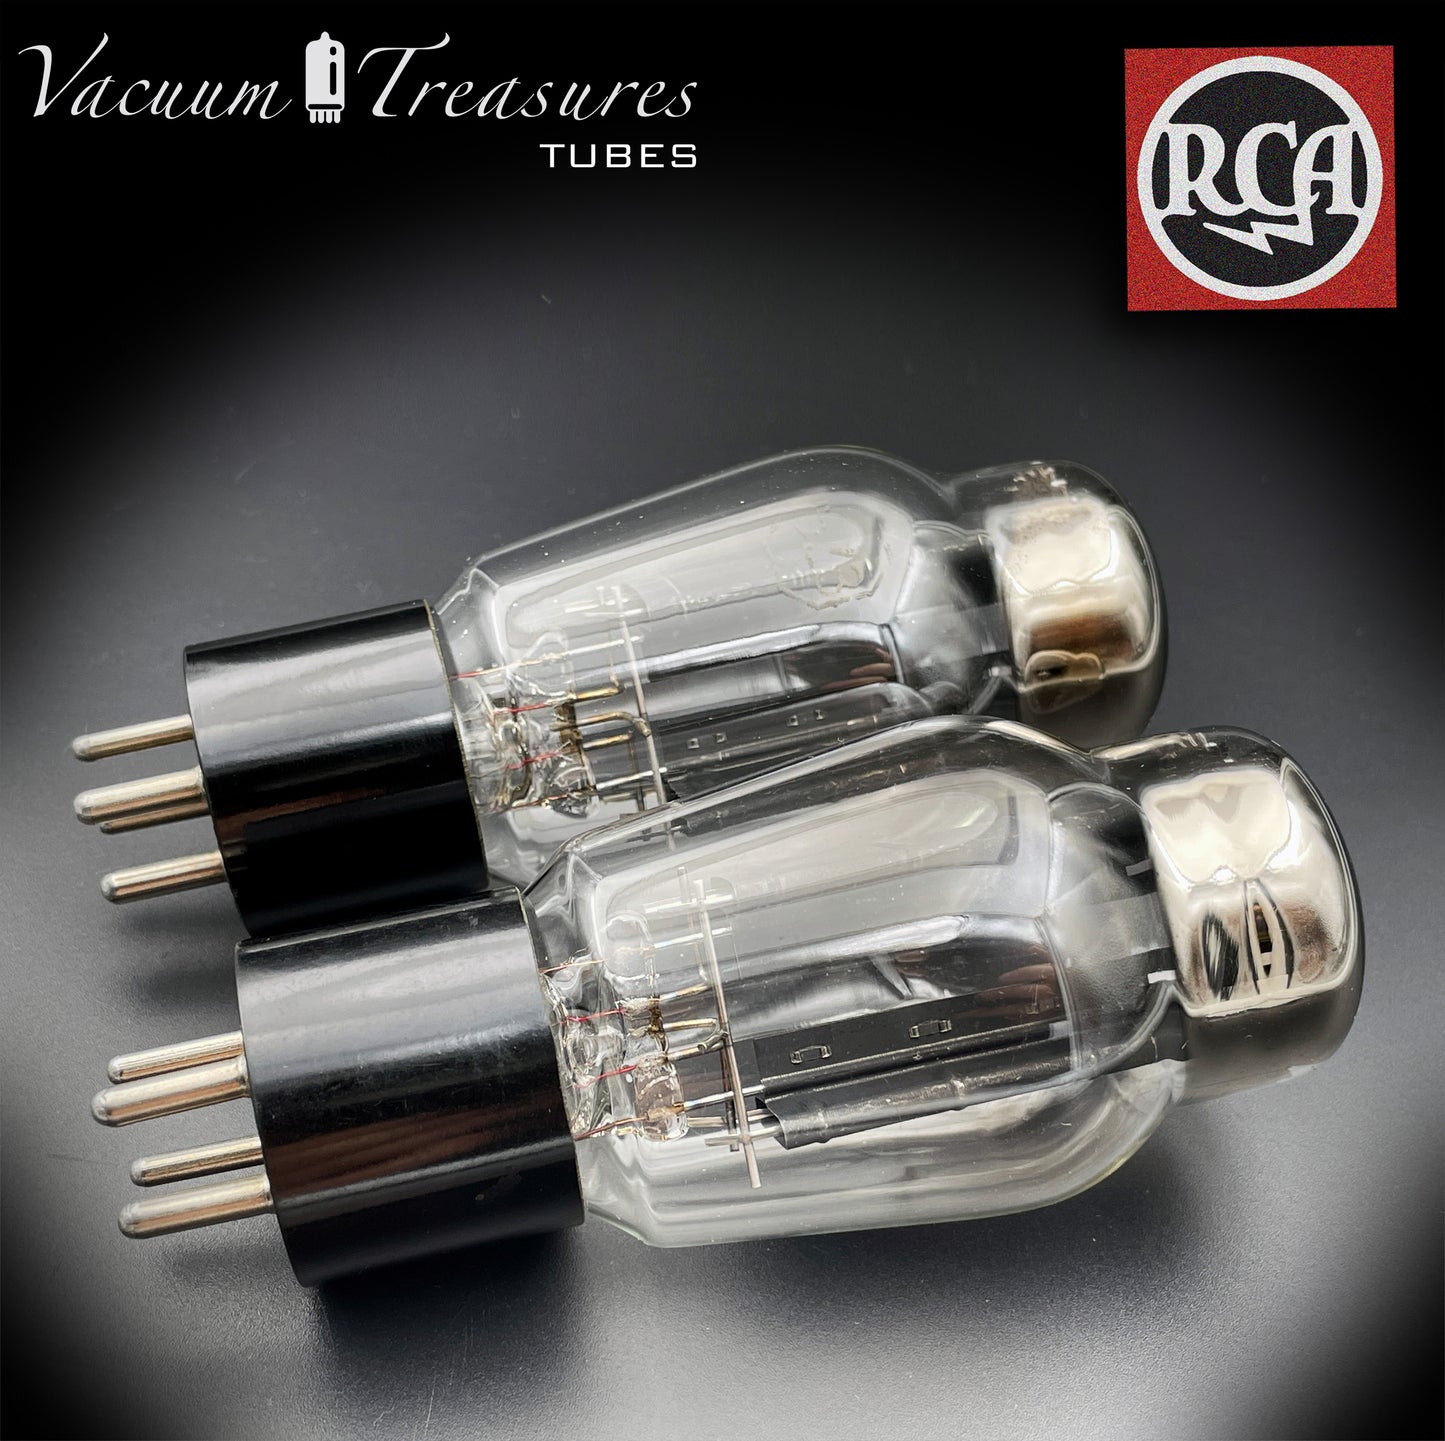 Plaques noires RCA 5Z3 (VT-145) côté supérieur [] Getter paire assortie de tubes redresseurs fabriqués aux États-Unis